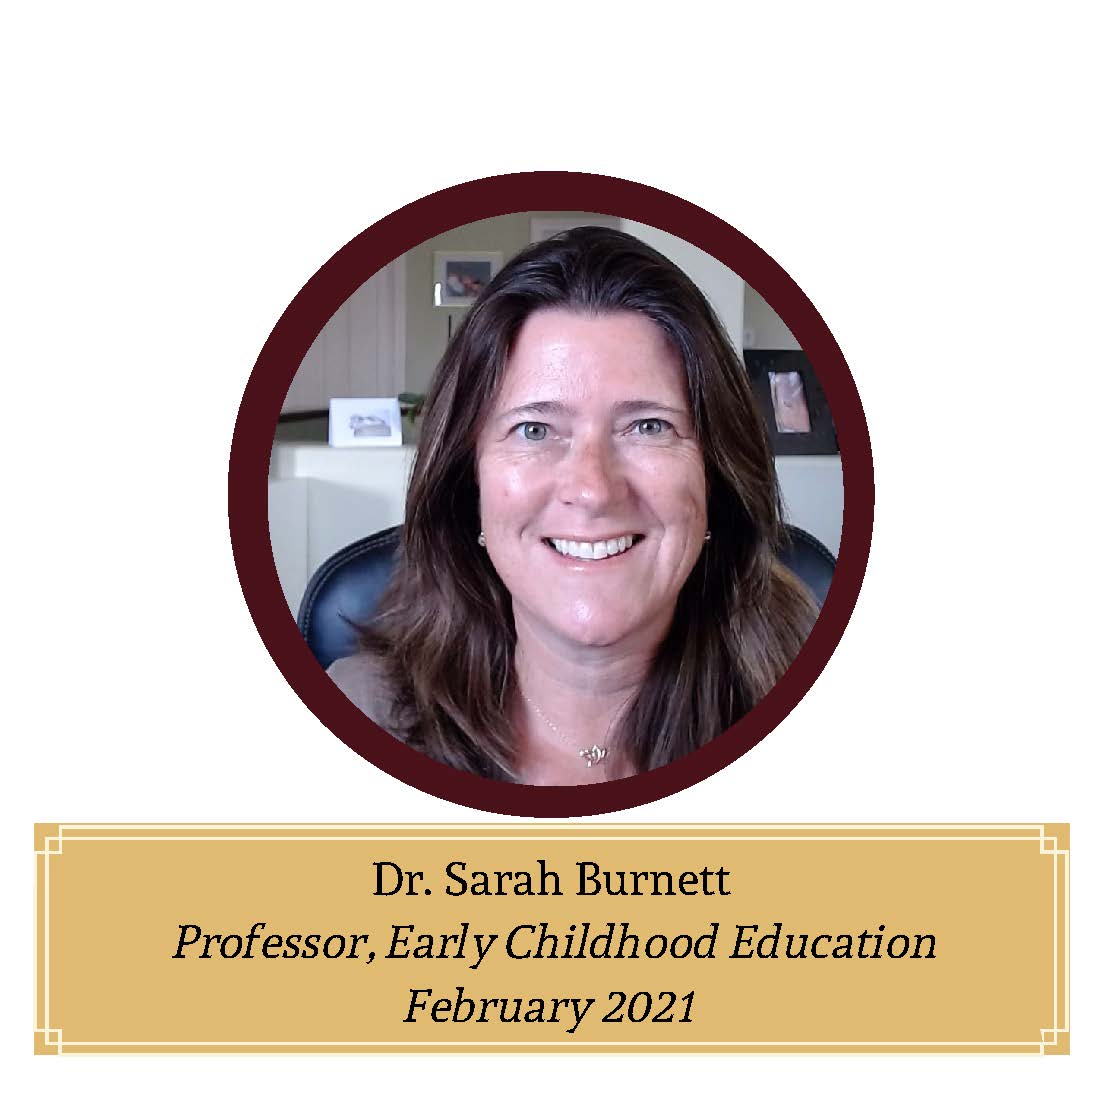 Dr. Sarah Burnett